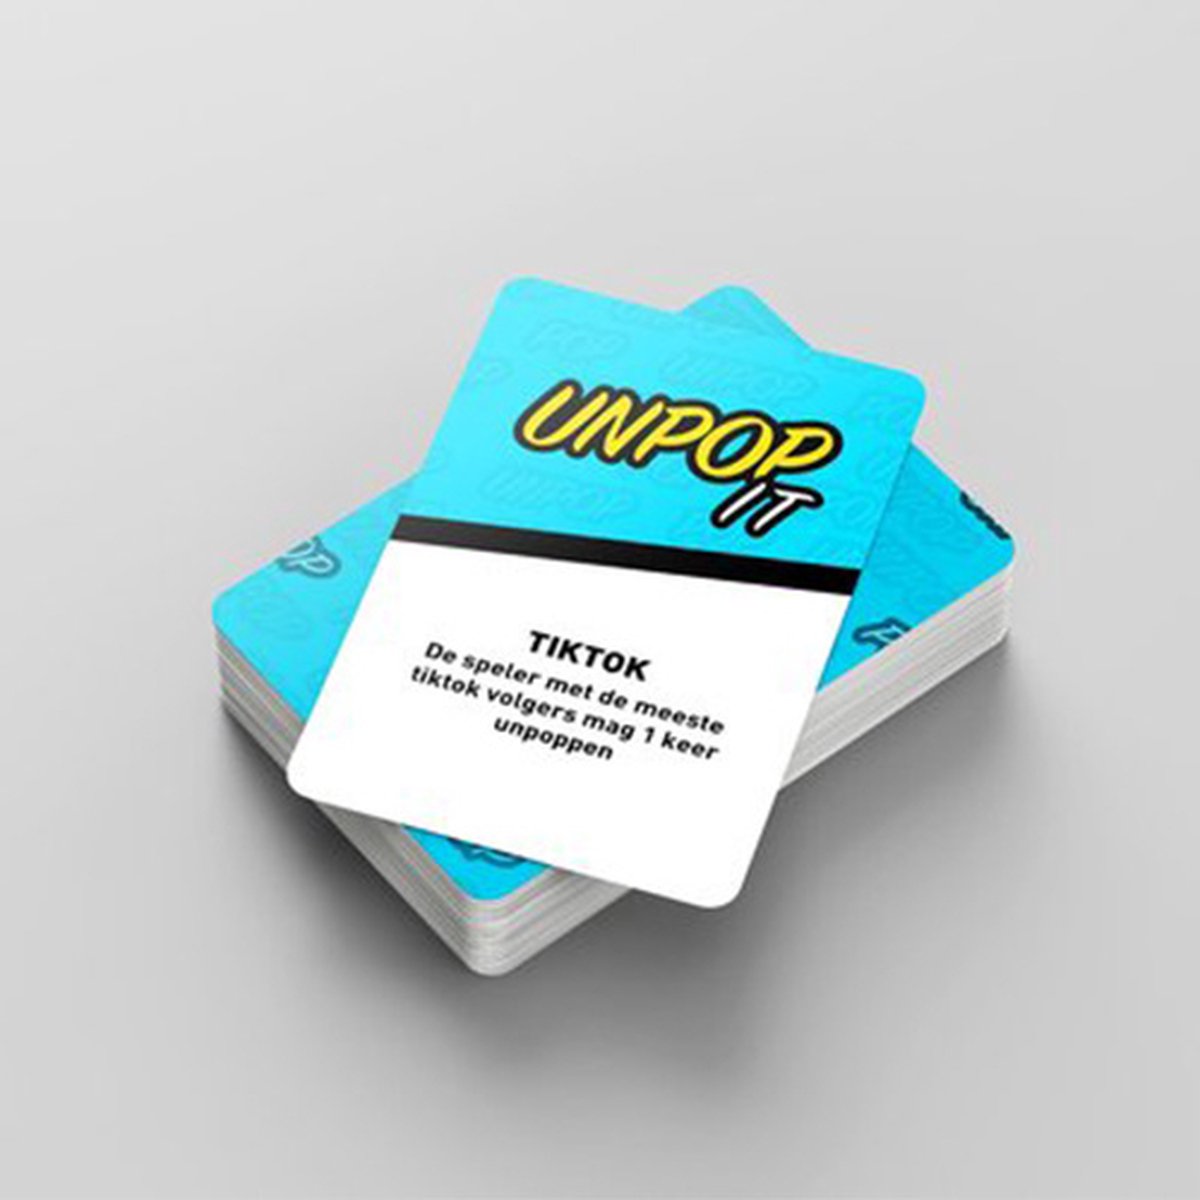 UnPop it kaartspel - Fidget toys - Pop it - 51 opdrachten - Karton - blauw